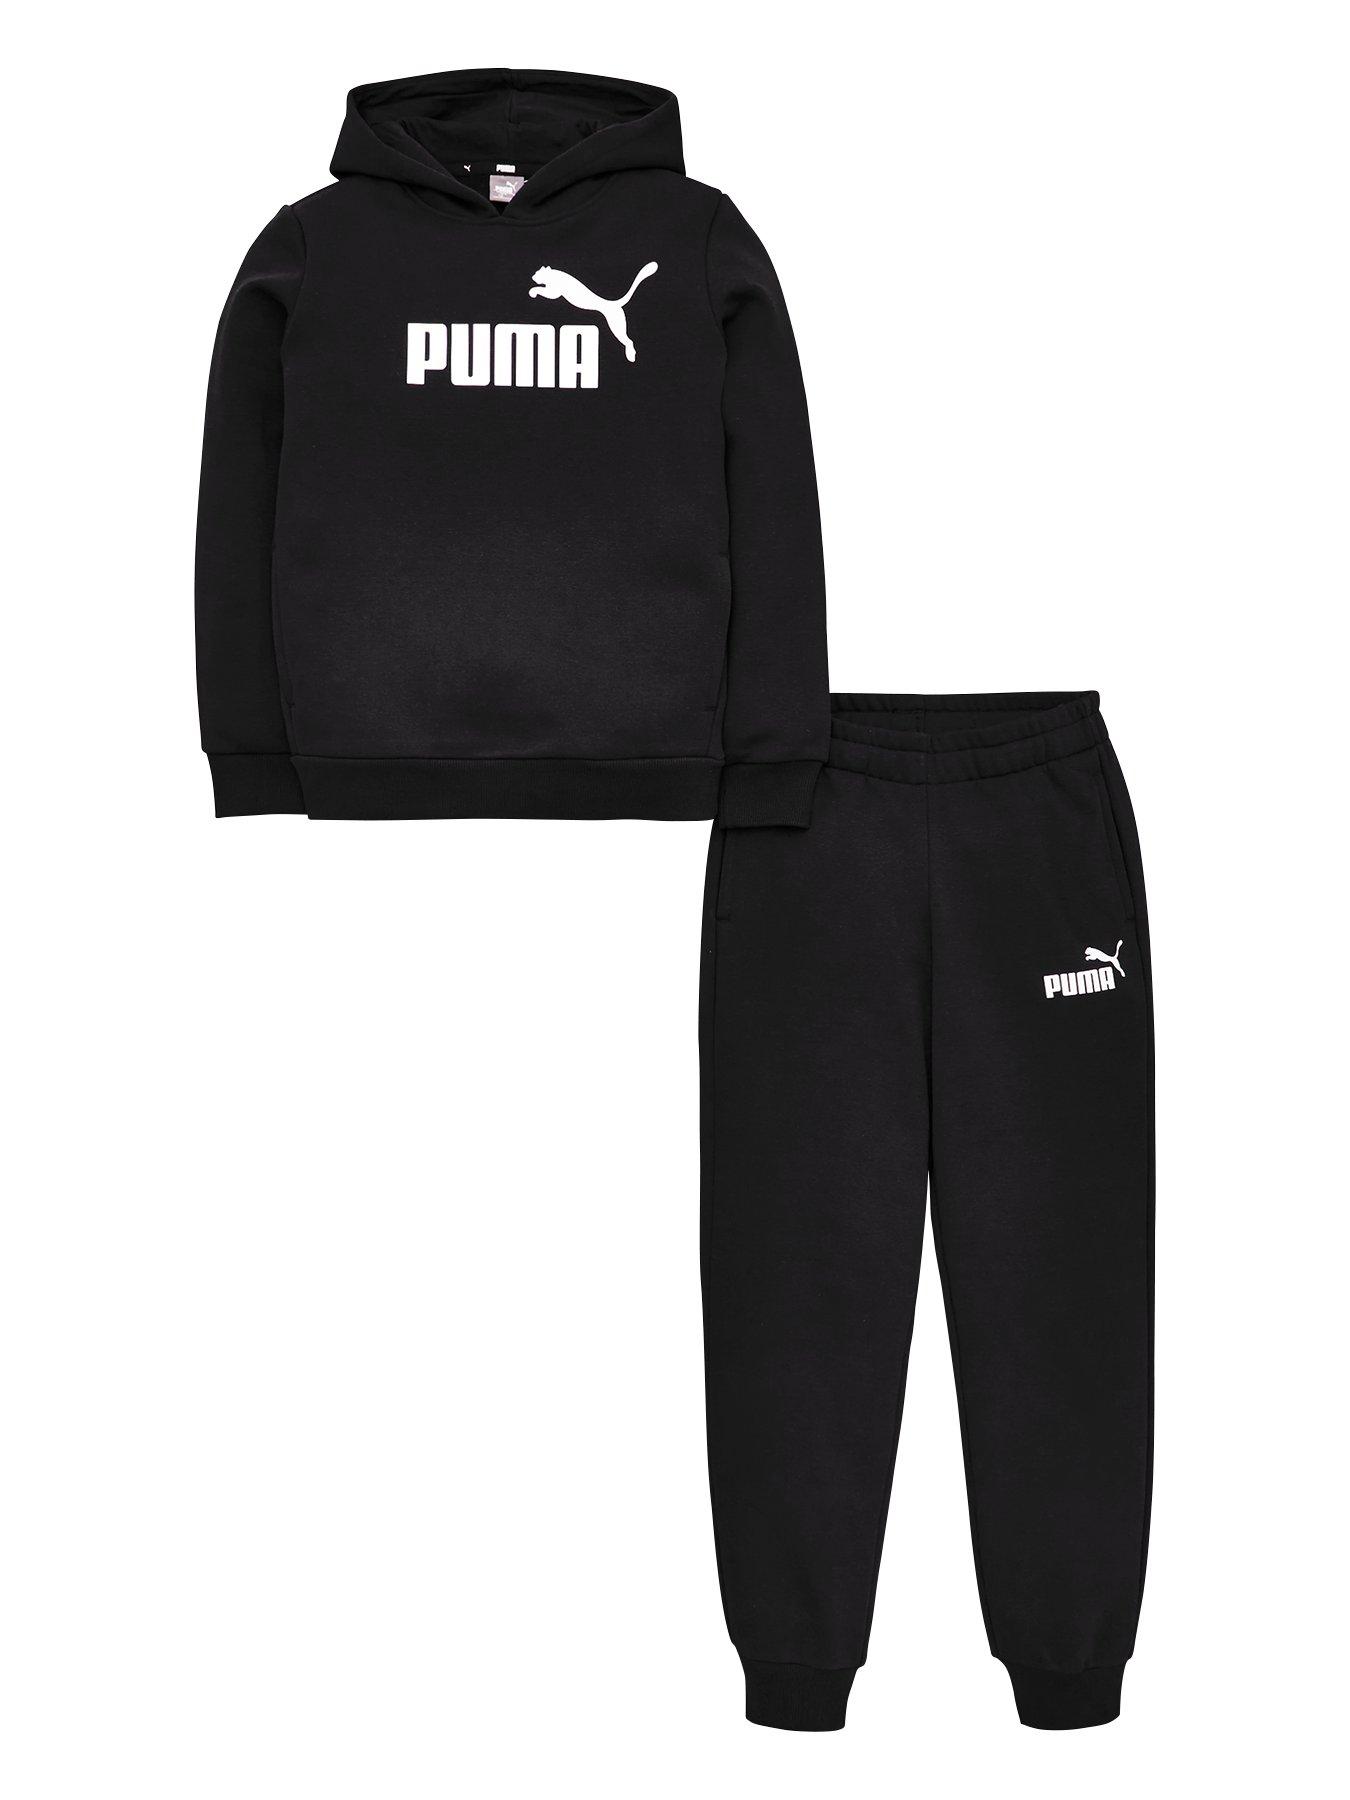 puma jogging suit